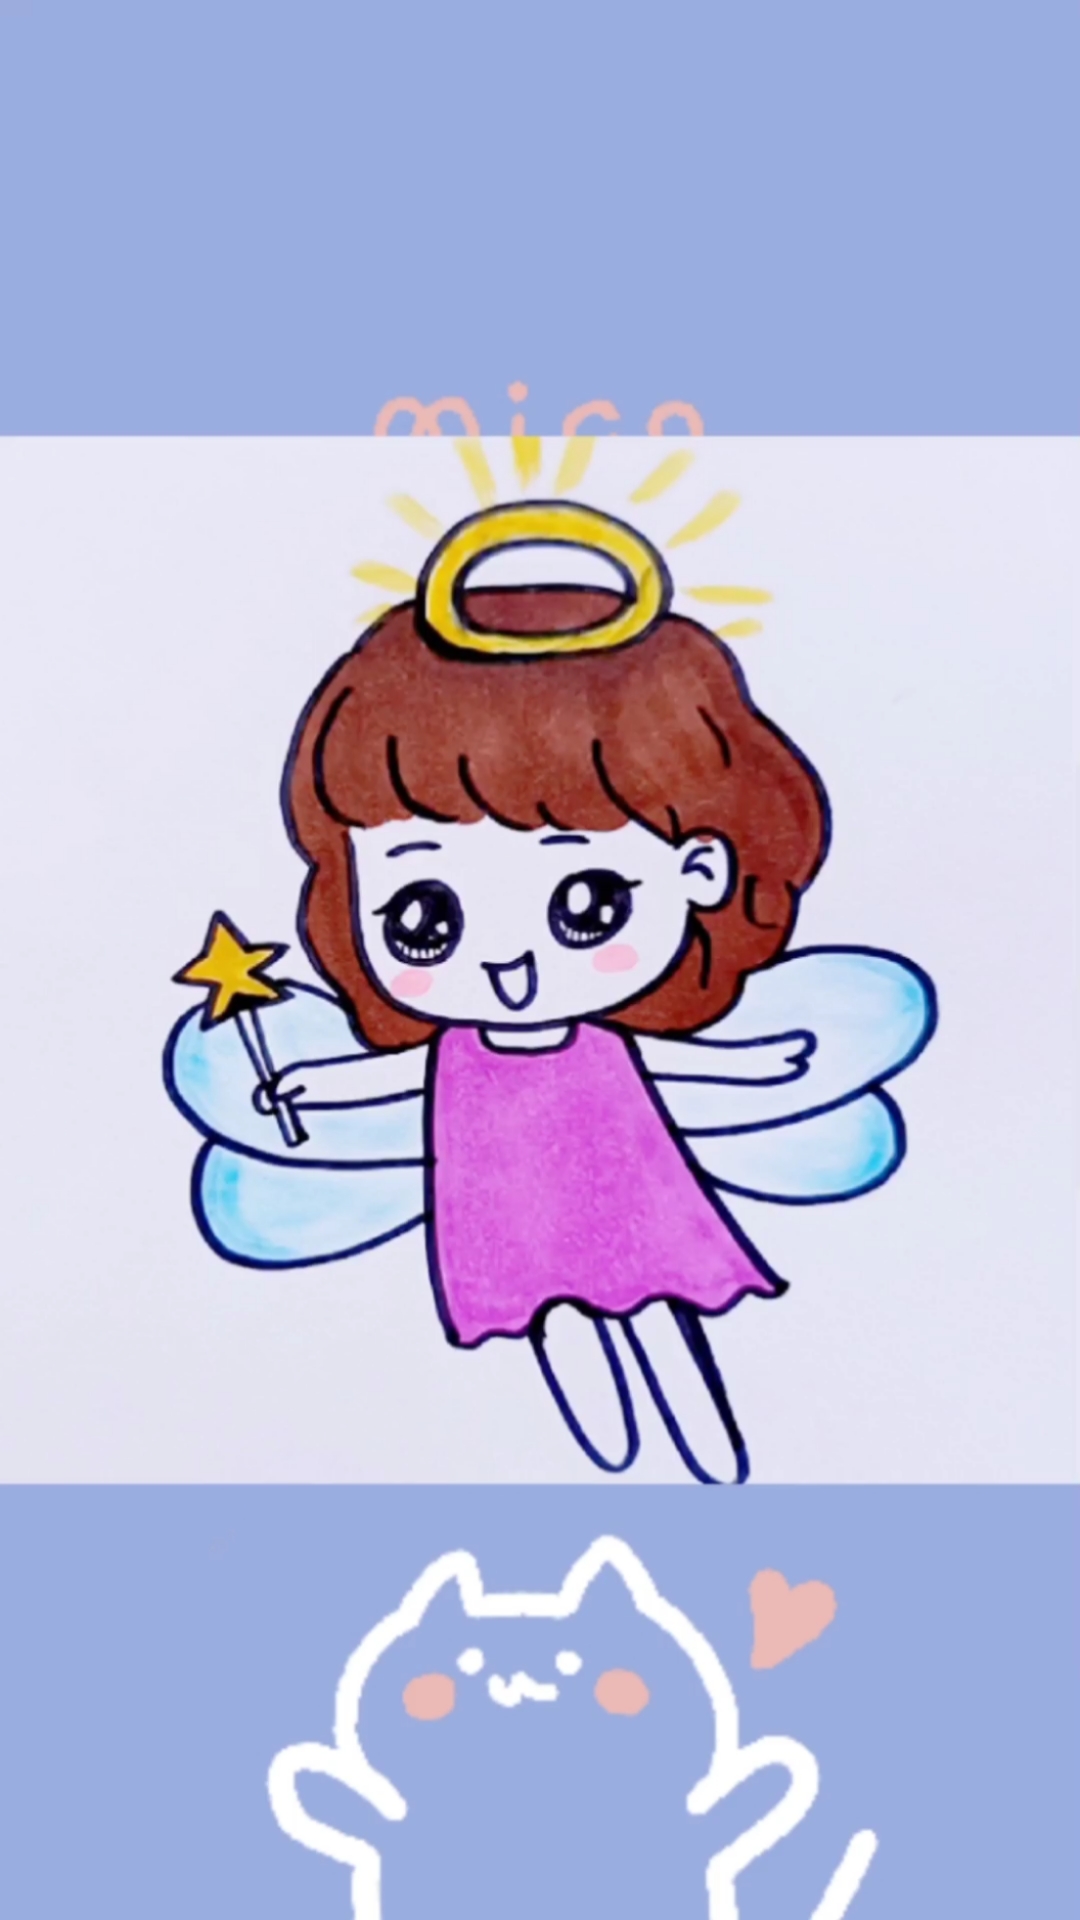 小天使可爱简笔画图片